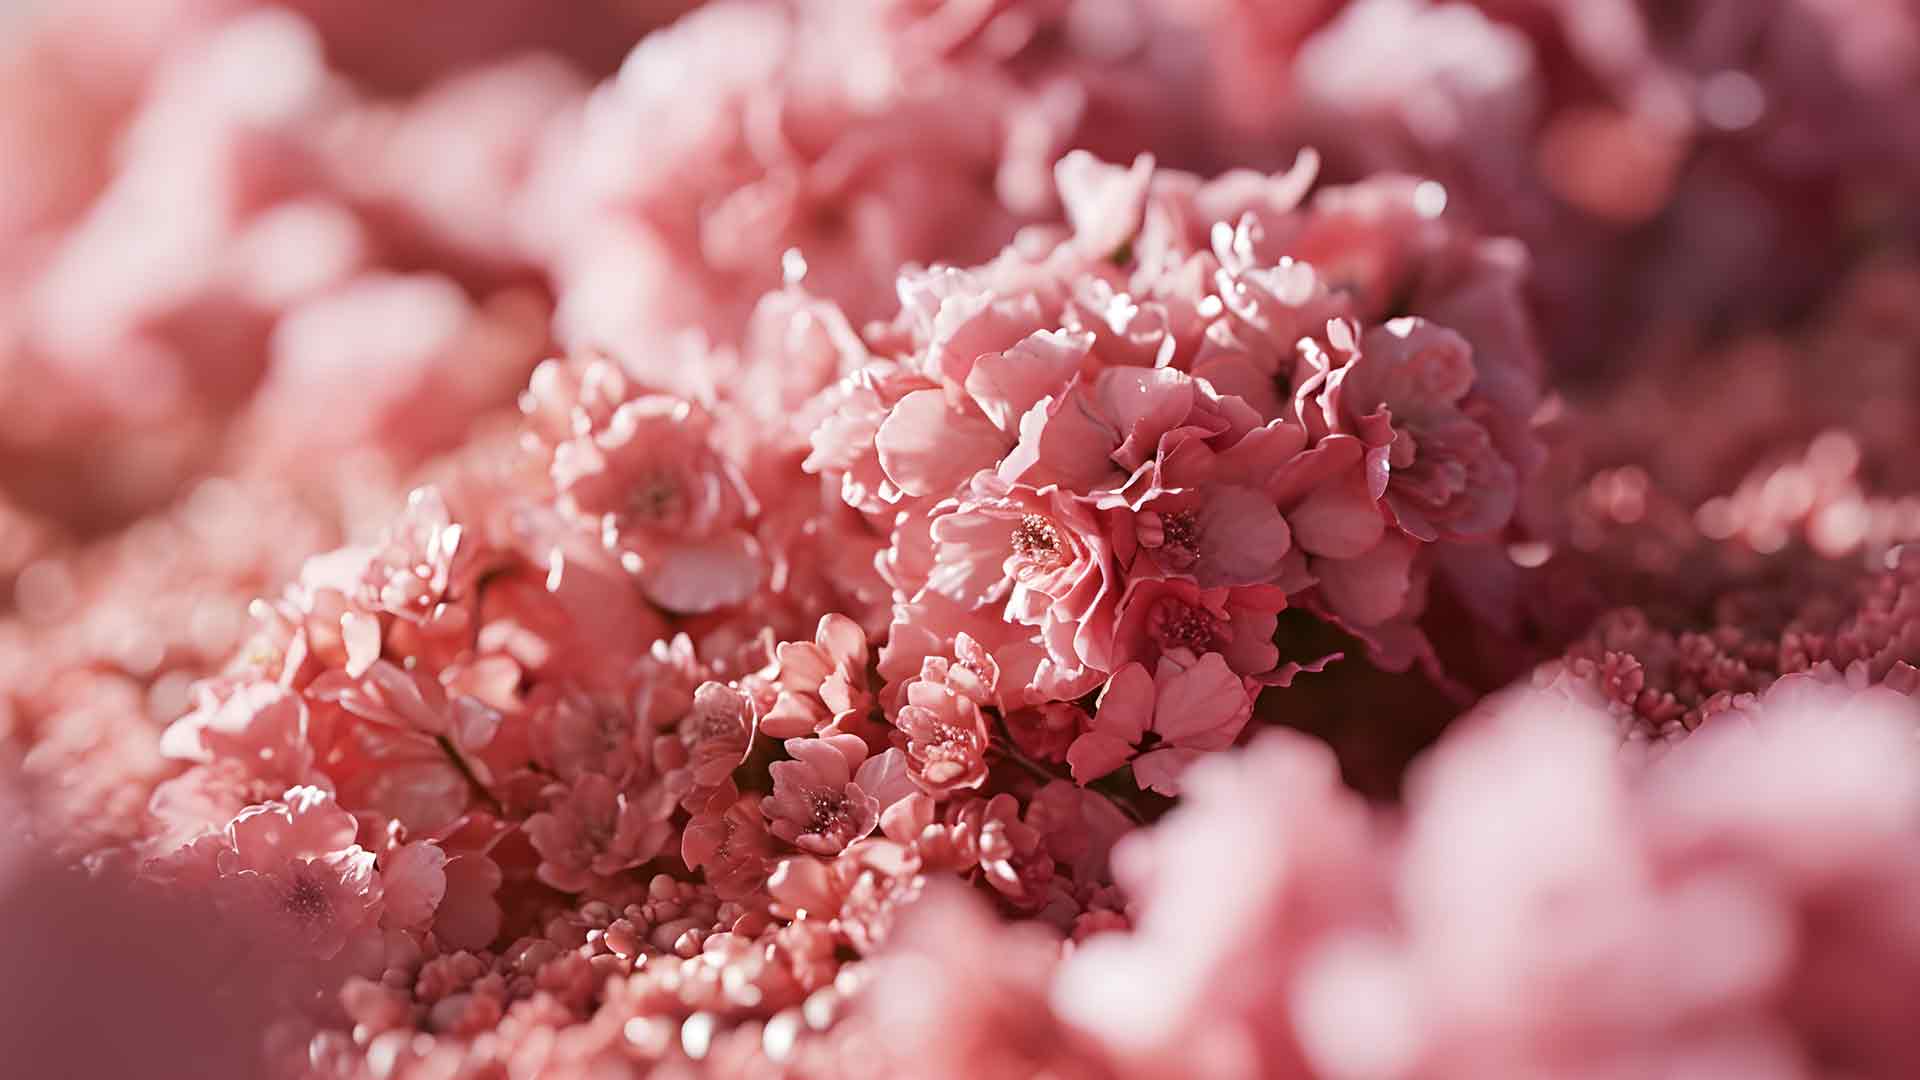 粉红色美丽的花朵桌面壁纸